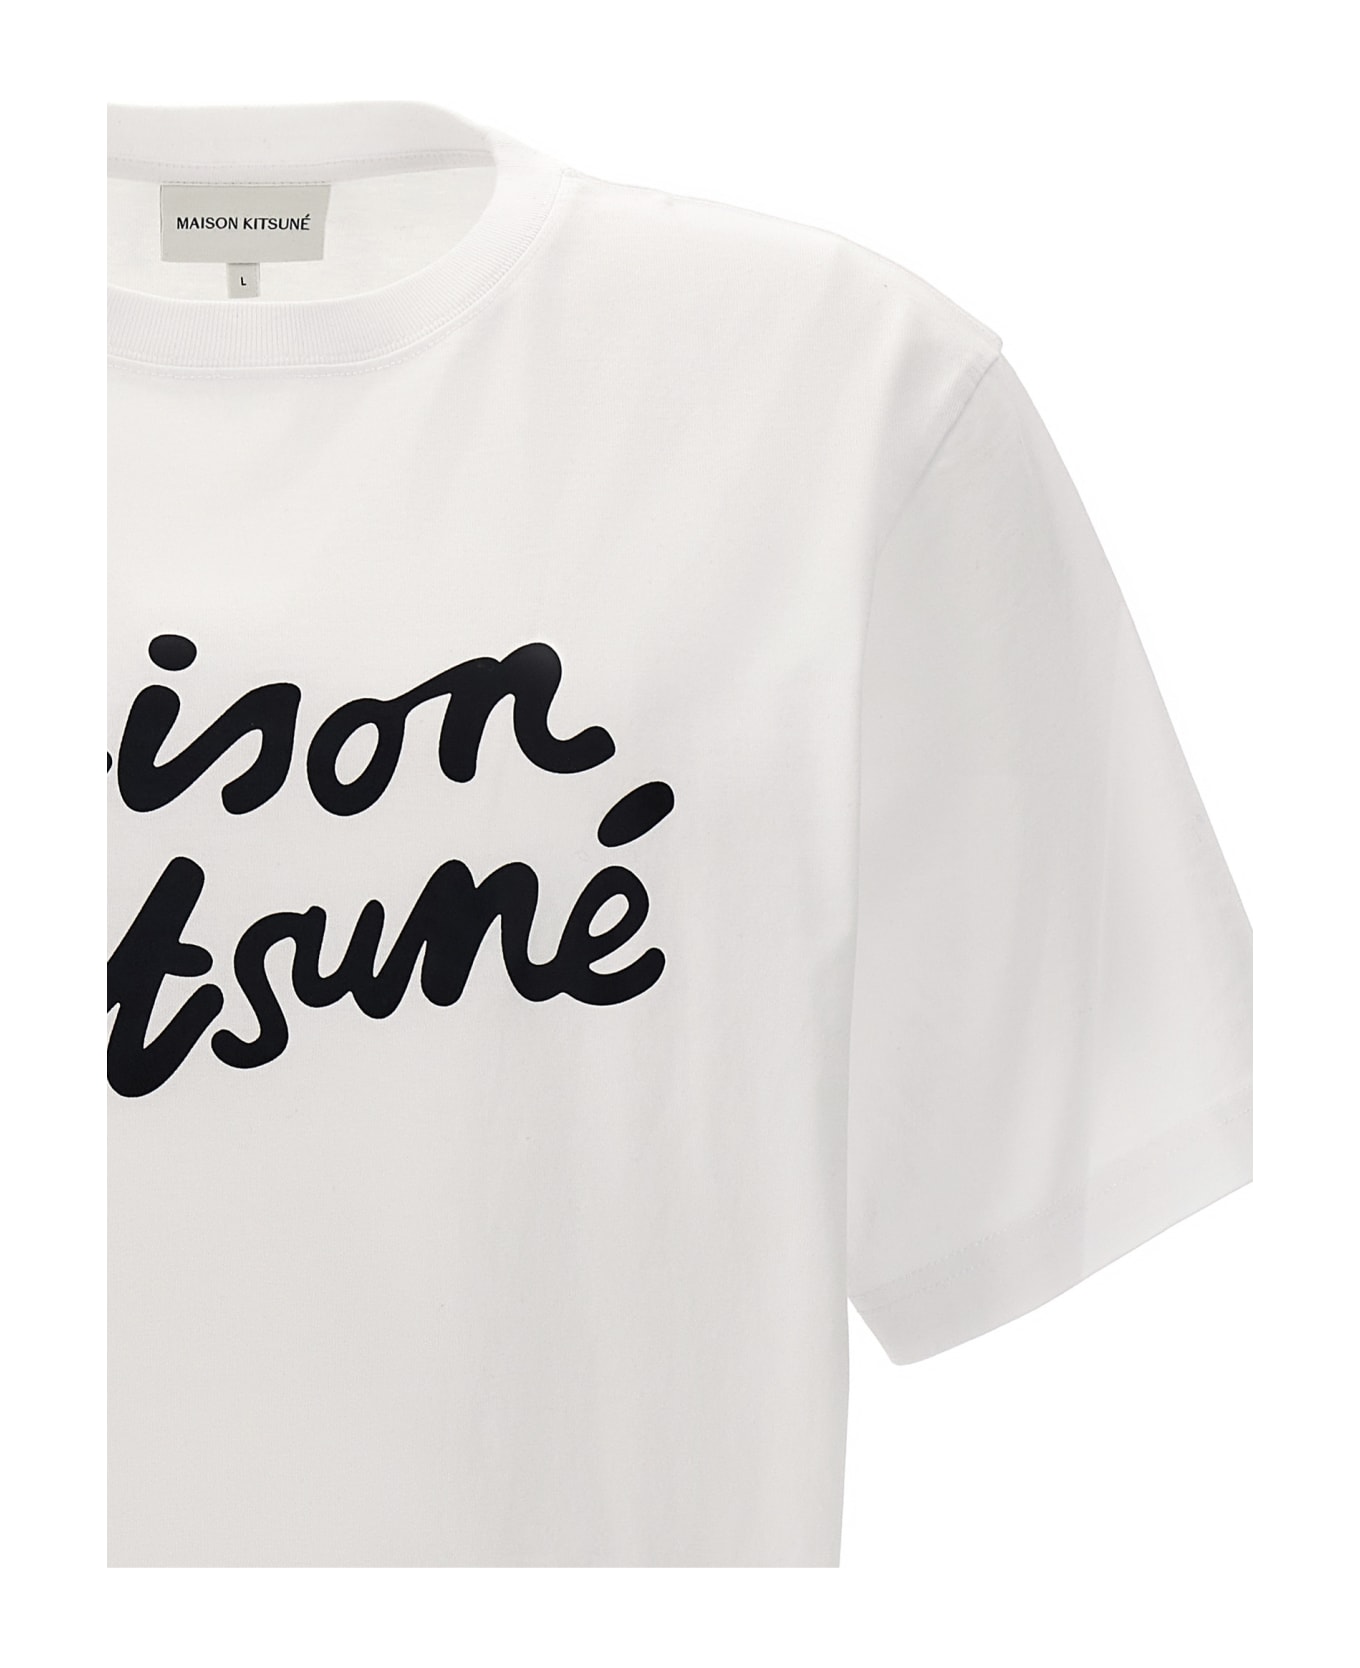 Maison Kitsuné 'maison Kitsuné Handwriting' T-shirt - White/Black